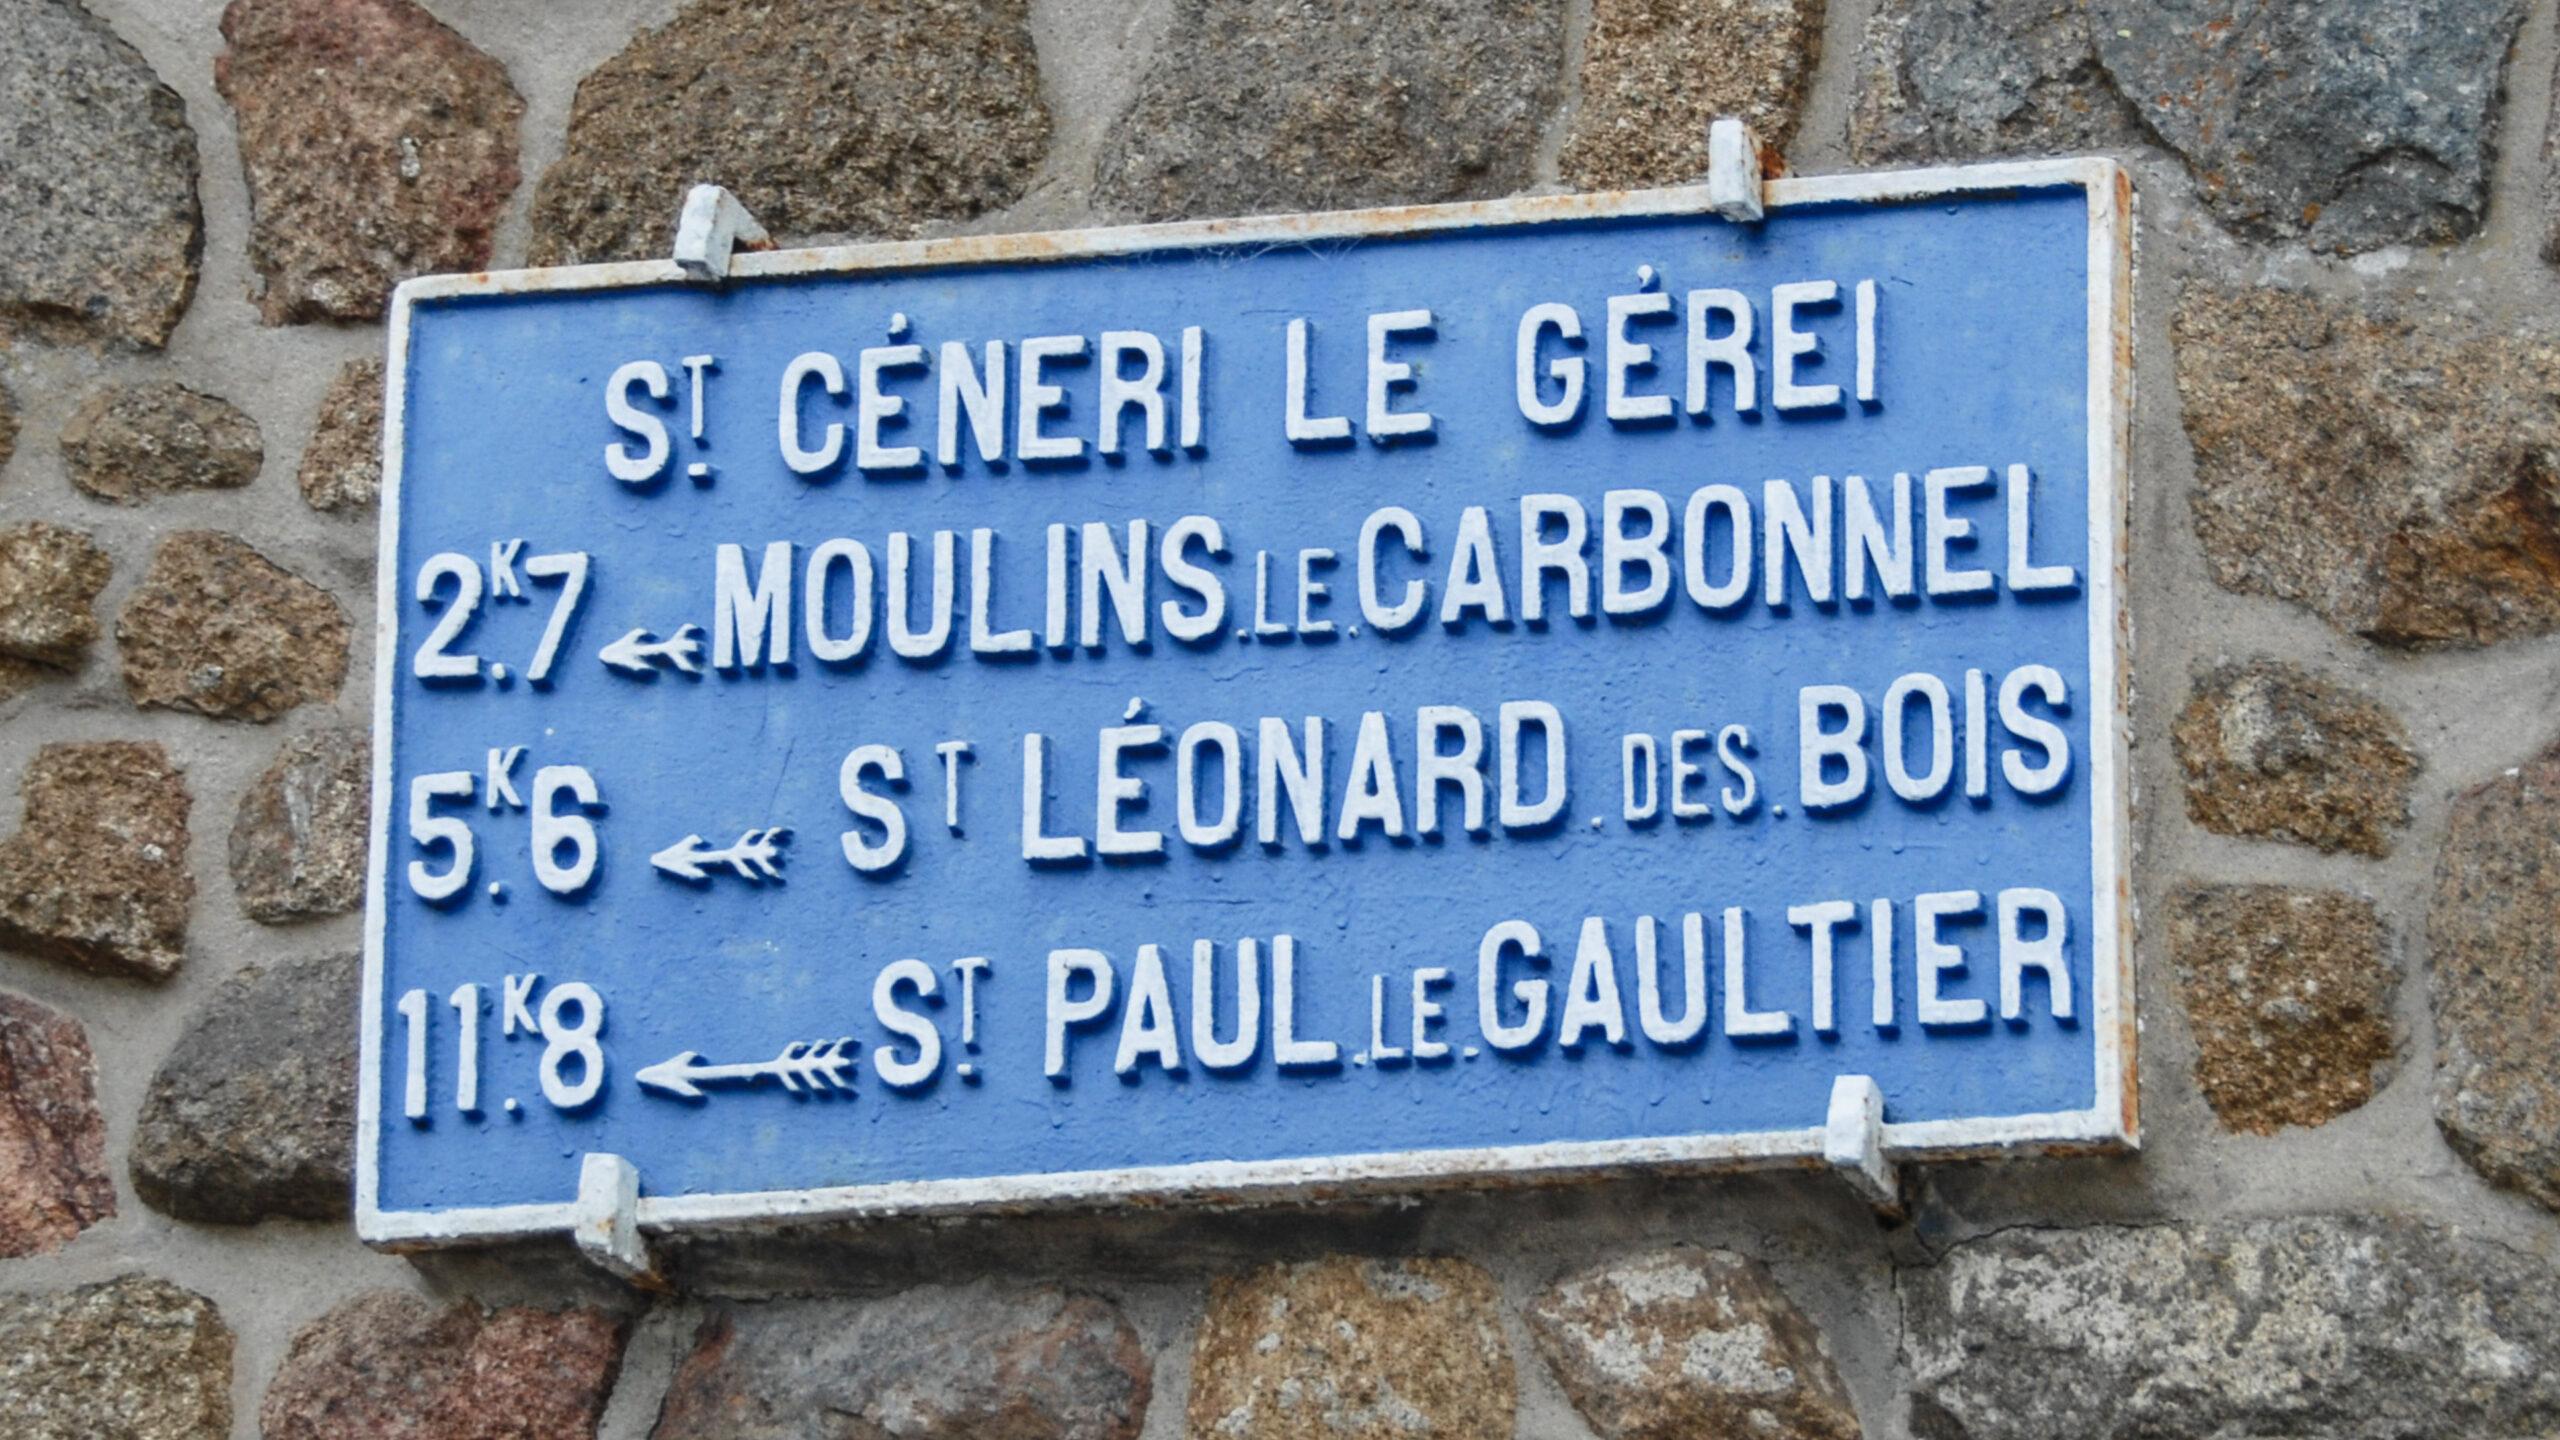 St-Céneri-le-Gérei. Foto: Hilke Maunder